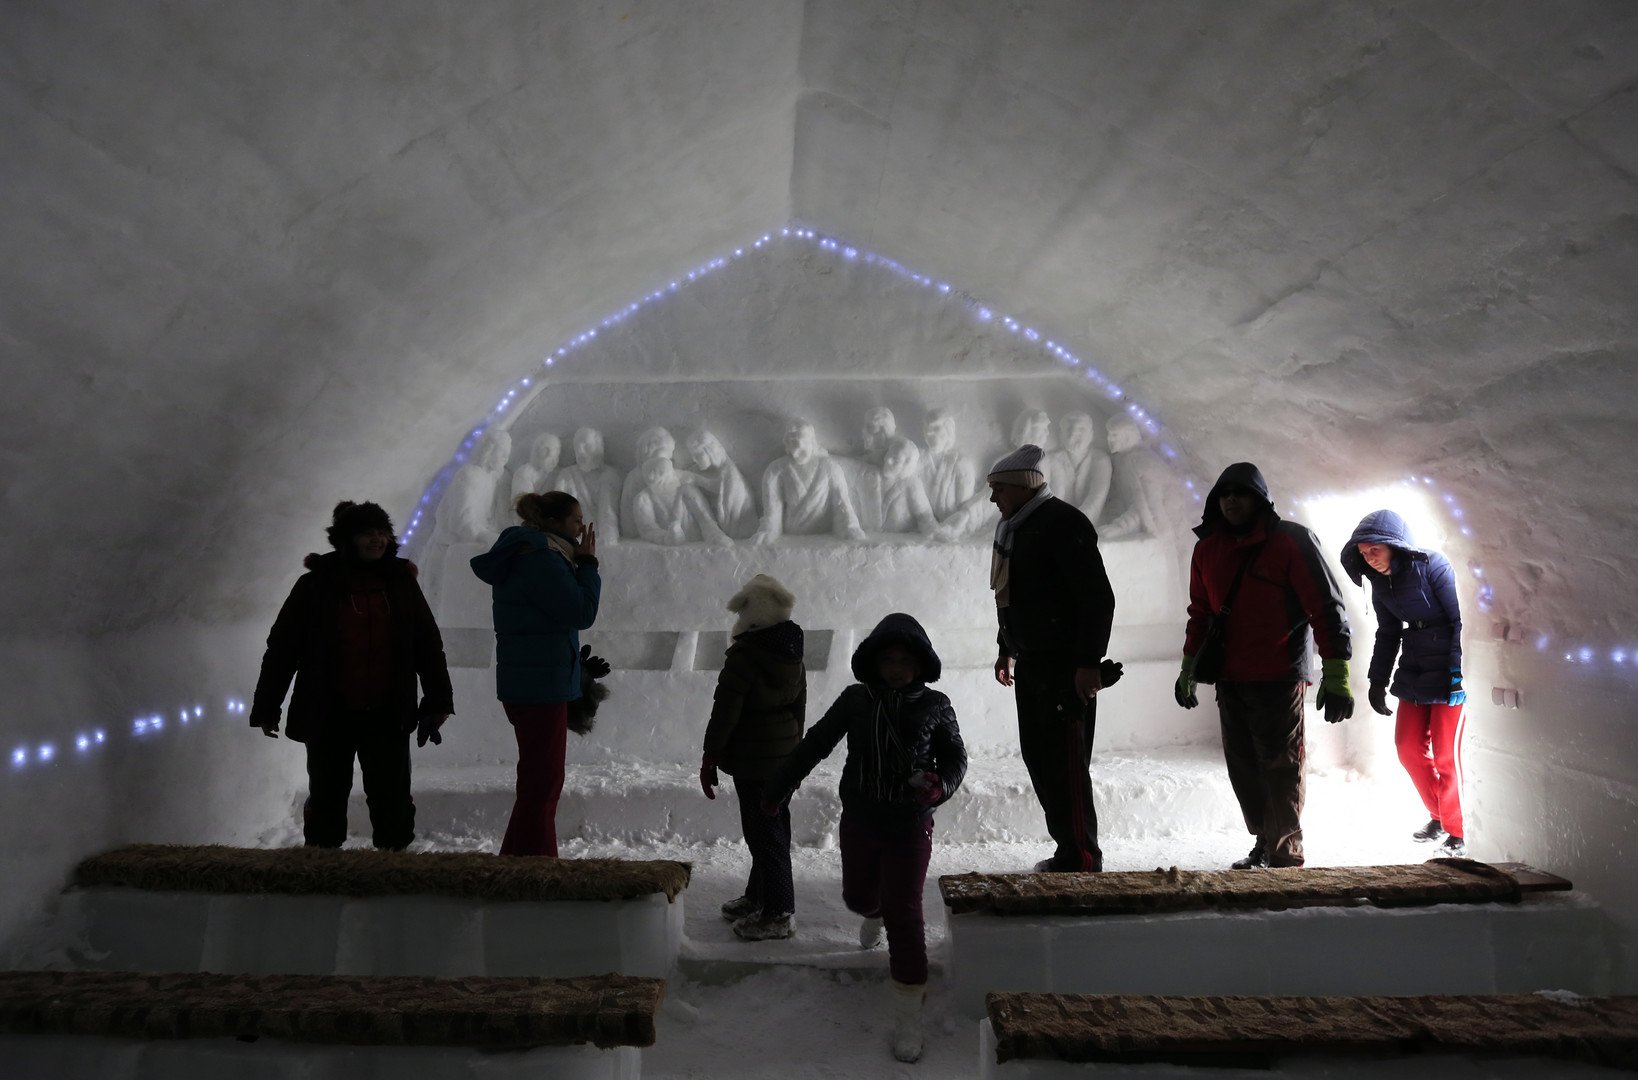 سائحون يتجولون داخل الكنيسة أمام لوحة منحوته في الجليد تصور مشهد العشاء الأخير، 28 يناير 2015